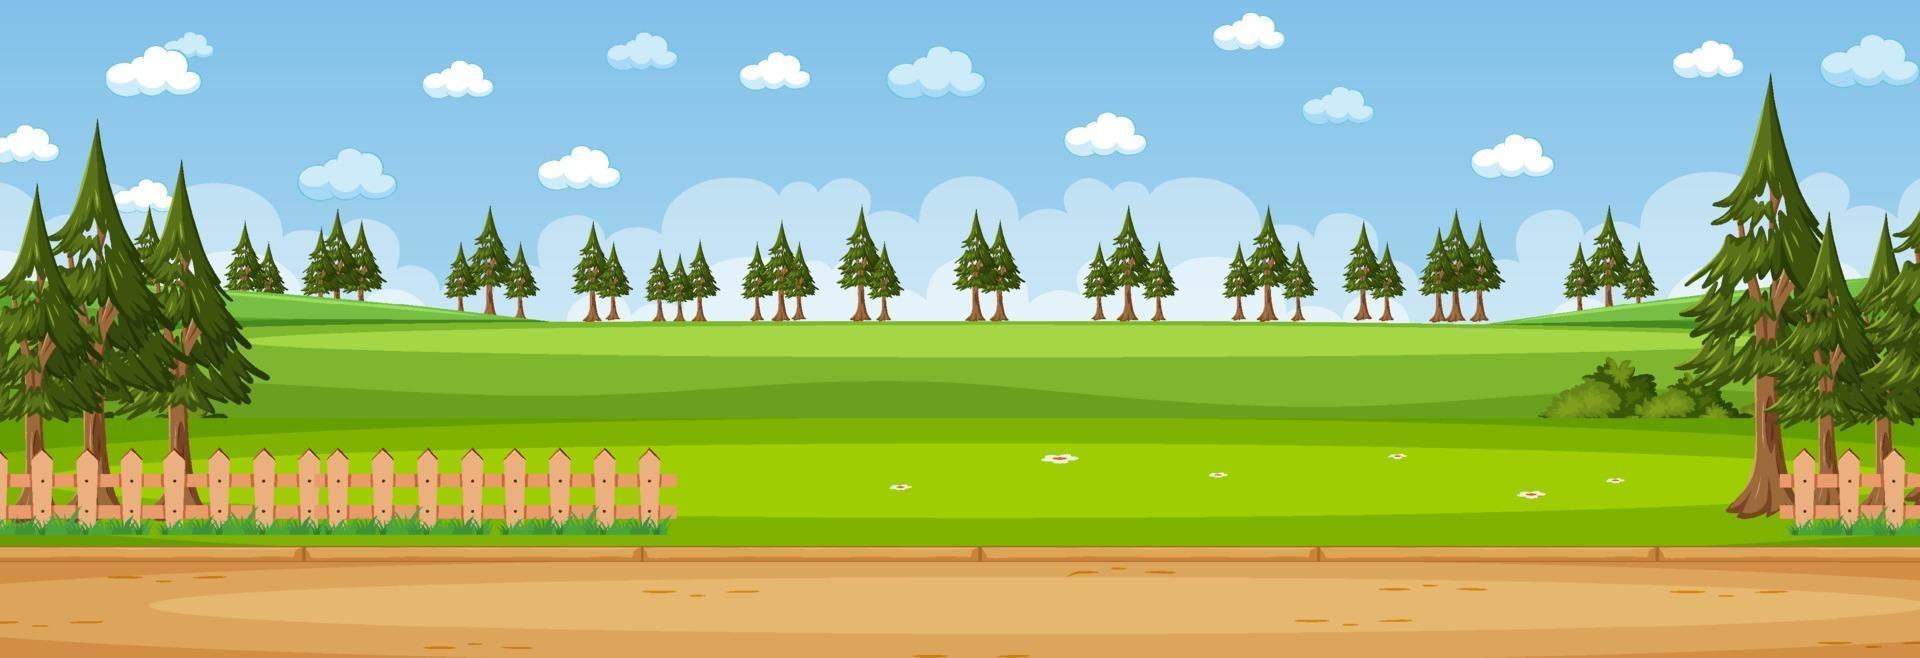 scena orizzontale del paesaggio vuoto durante il giorno con molti alberi di pino vettore